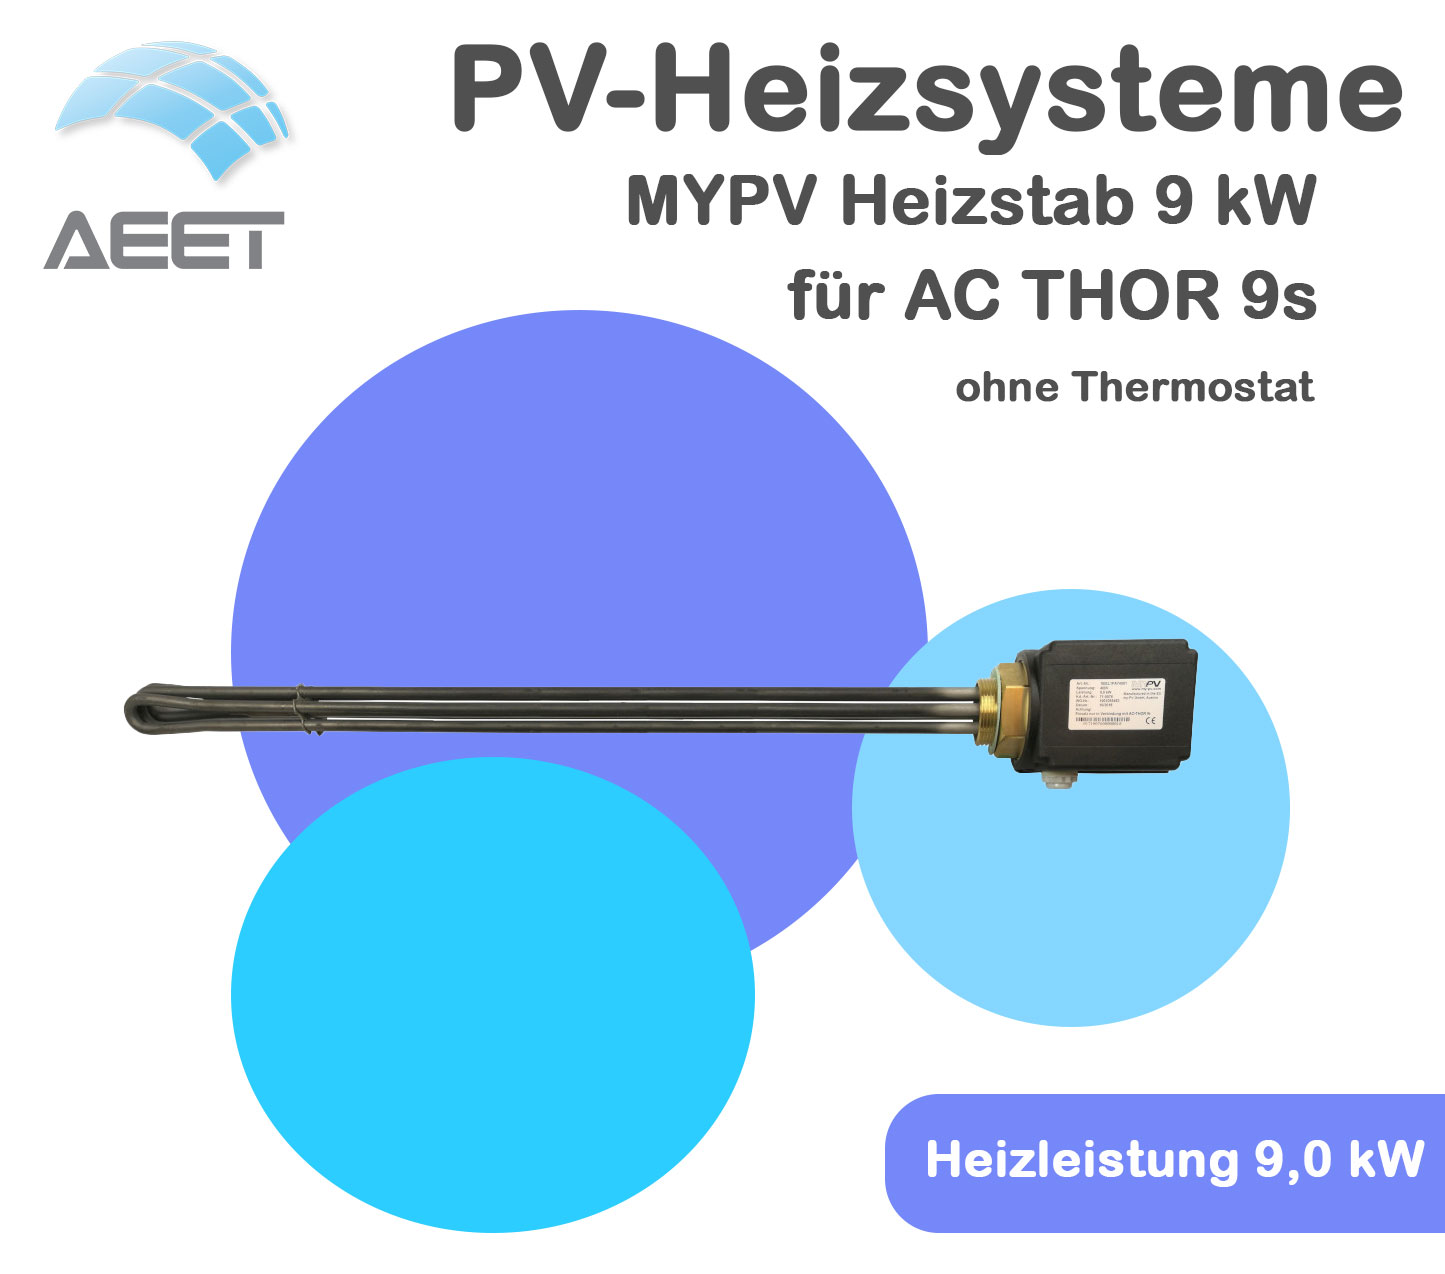 MYPV Heizstab 9 kW für AC THOR 9s ohne Thermostat